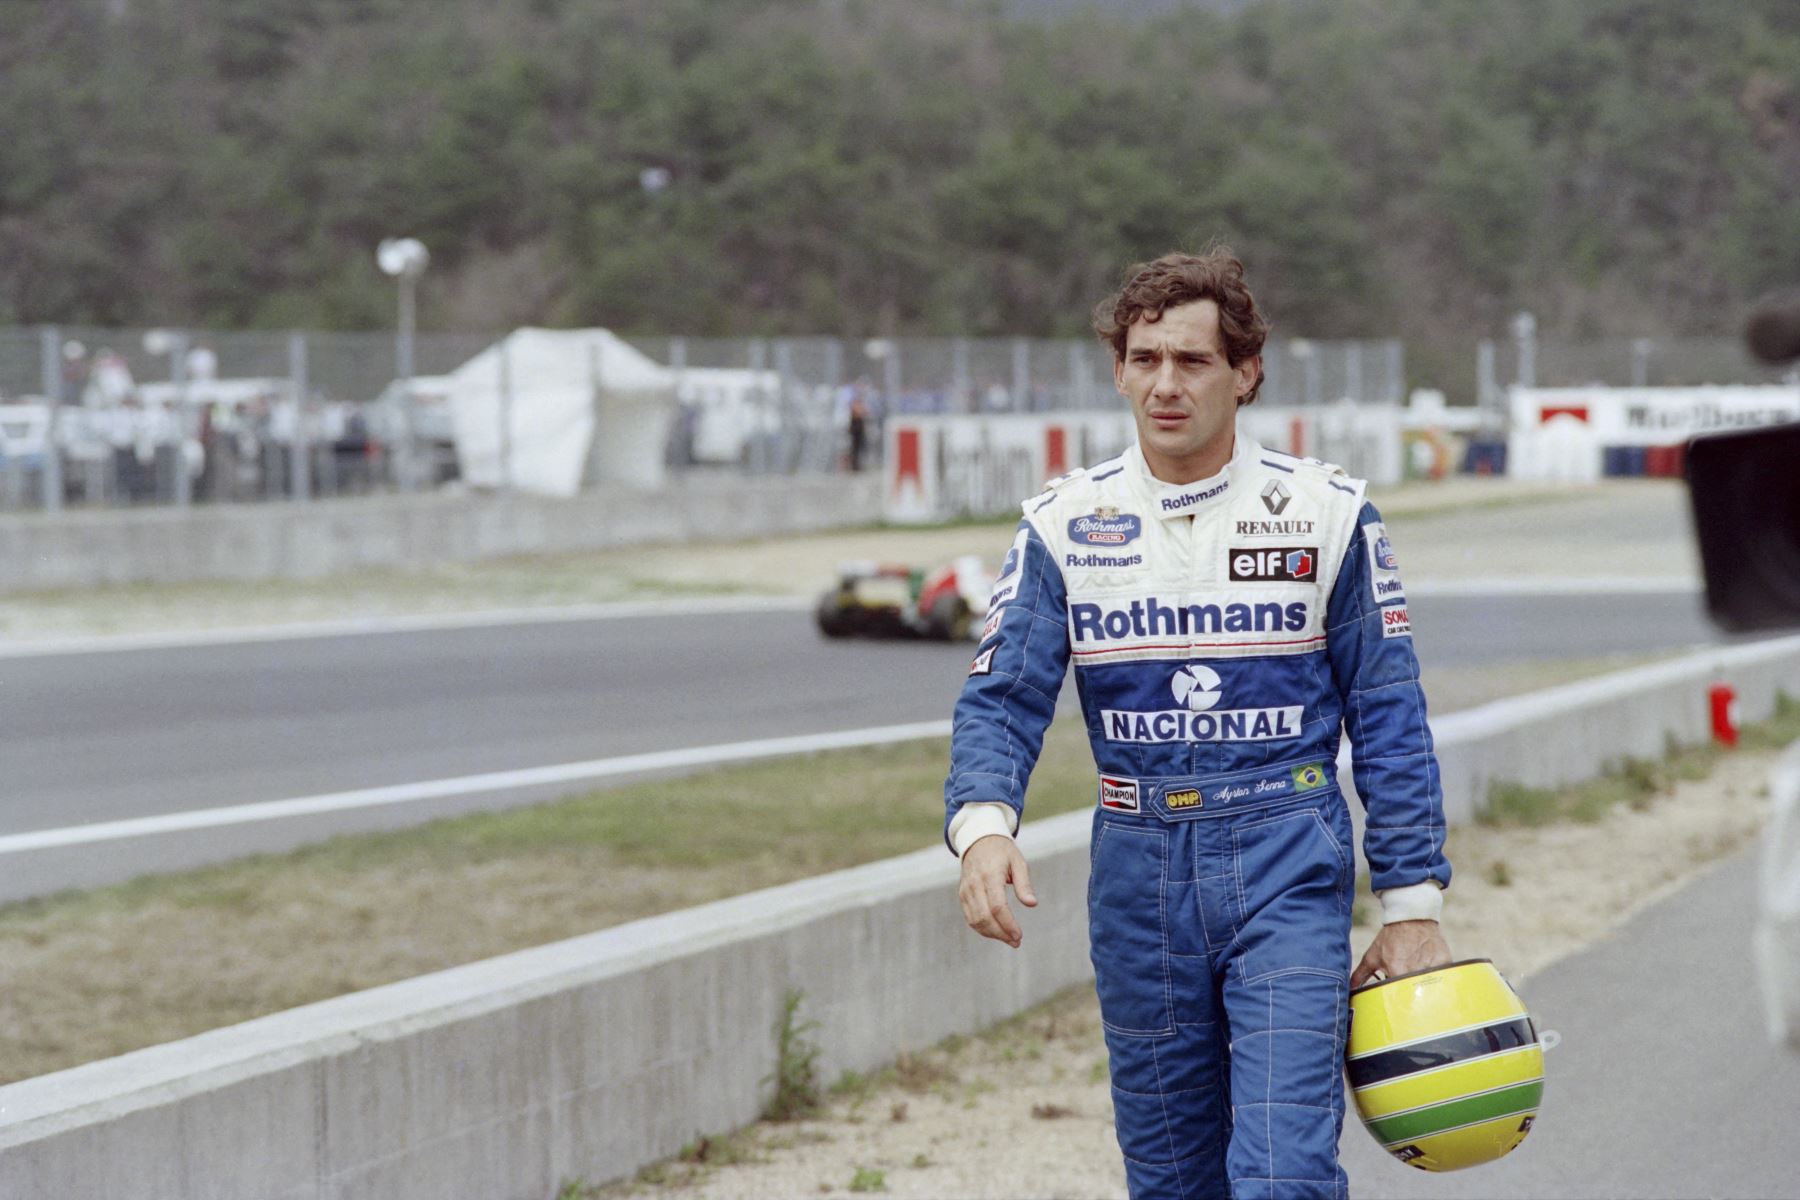 El piloto brasileño de Fórmula Uno Ayrton Senna cruza la pista de regreso a boxes el 17 de abril de 1994. Senna perdió el control de su Williams Renault en la primera curva del Gran Premio del Pacífico en Aida.
Foto: AFP